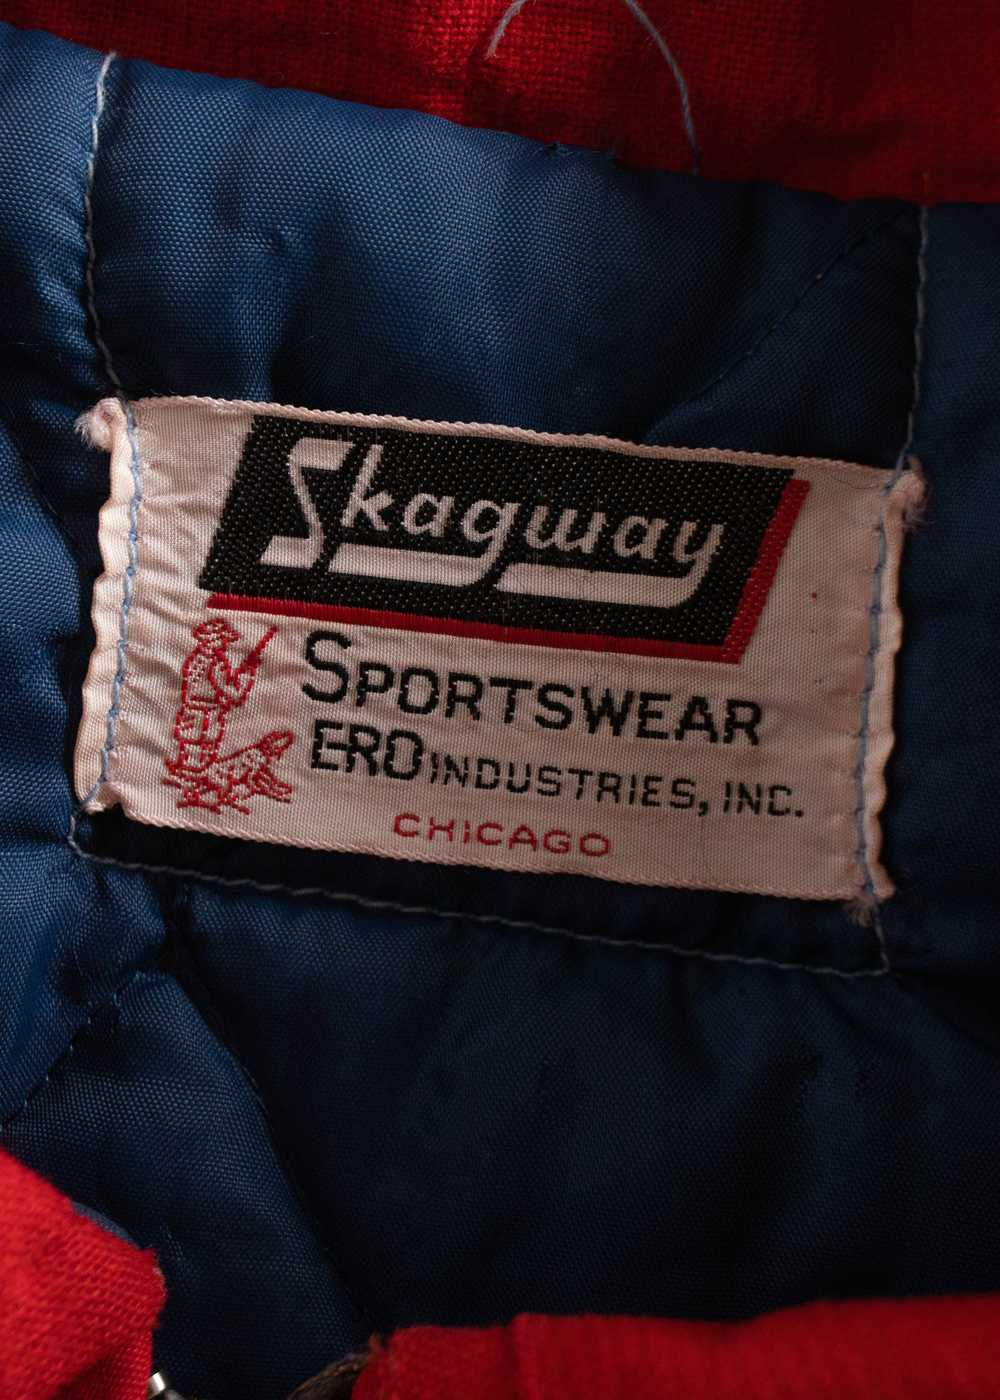 Vintage 1980s Skagway Sportswear Ero Industries P… - image 4